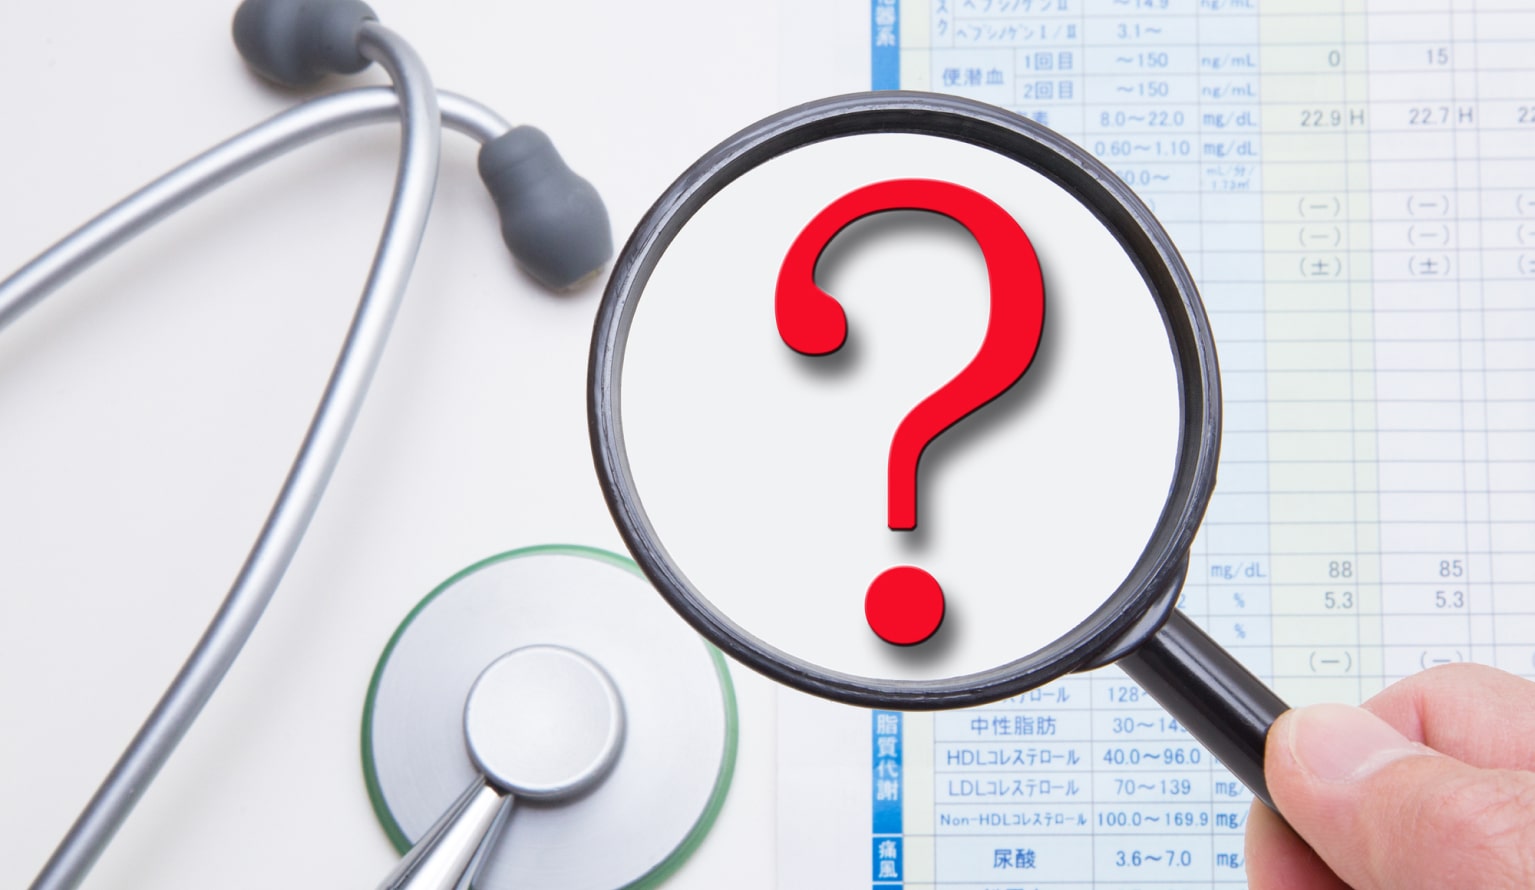 企業の健康診断は義務？罰則や対象者、検査項目、費用などを詳しく解説